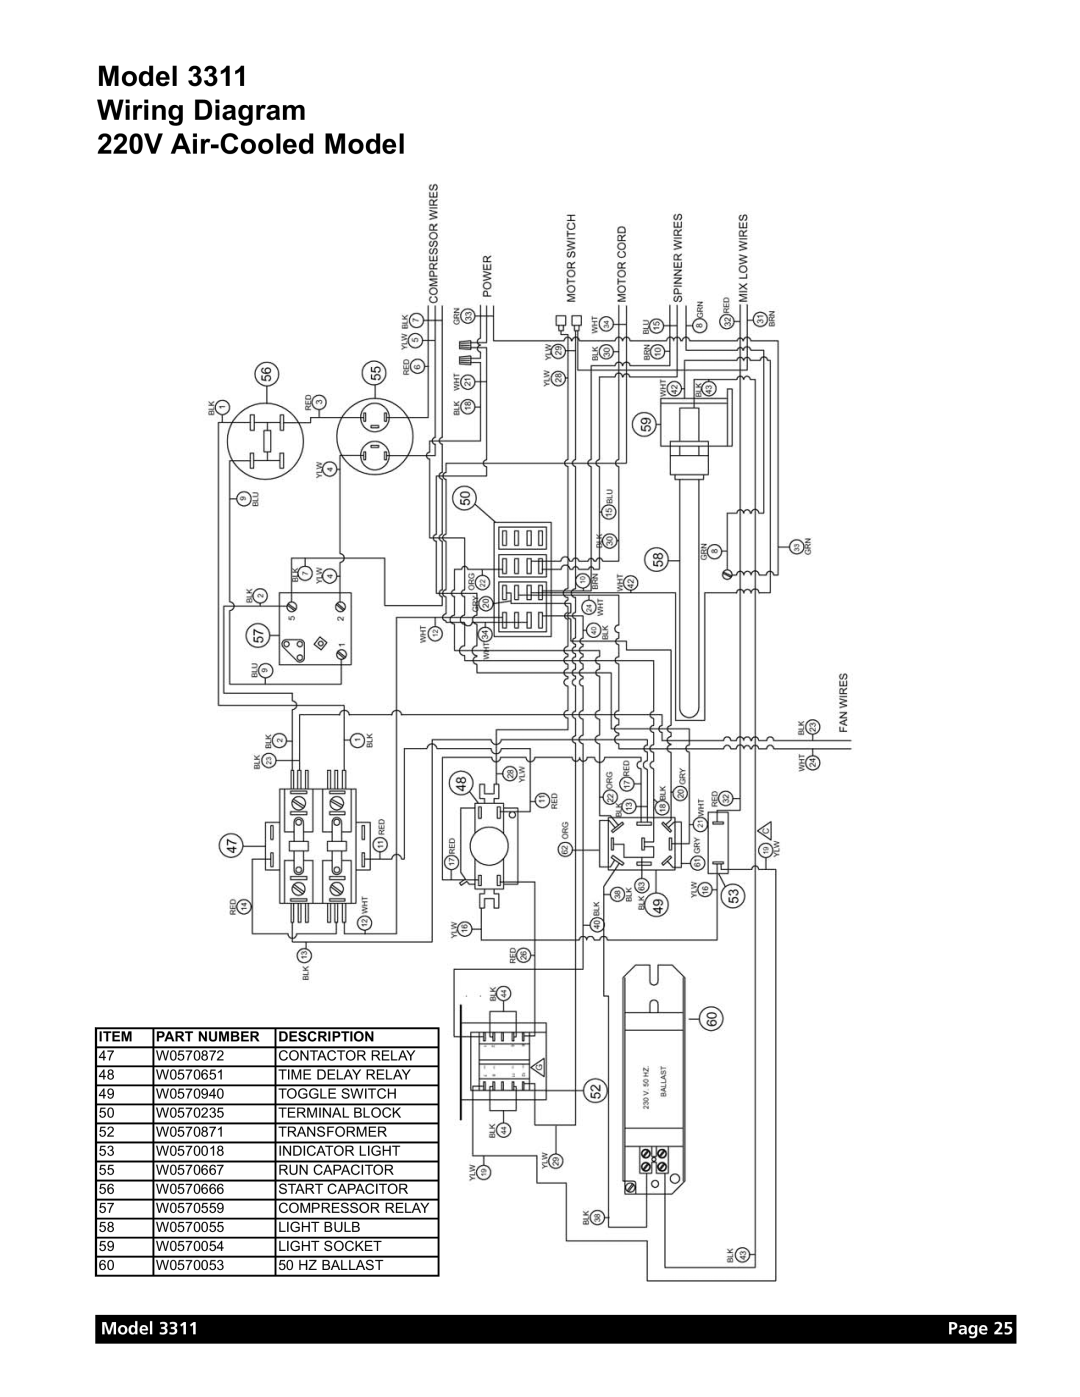 Grindmaster Model 3311 manual Model Wiring Diagram 220V Air-Cooled Model, Page, Part Number, Description 